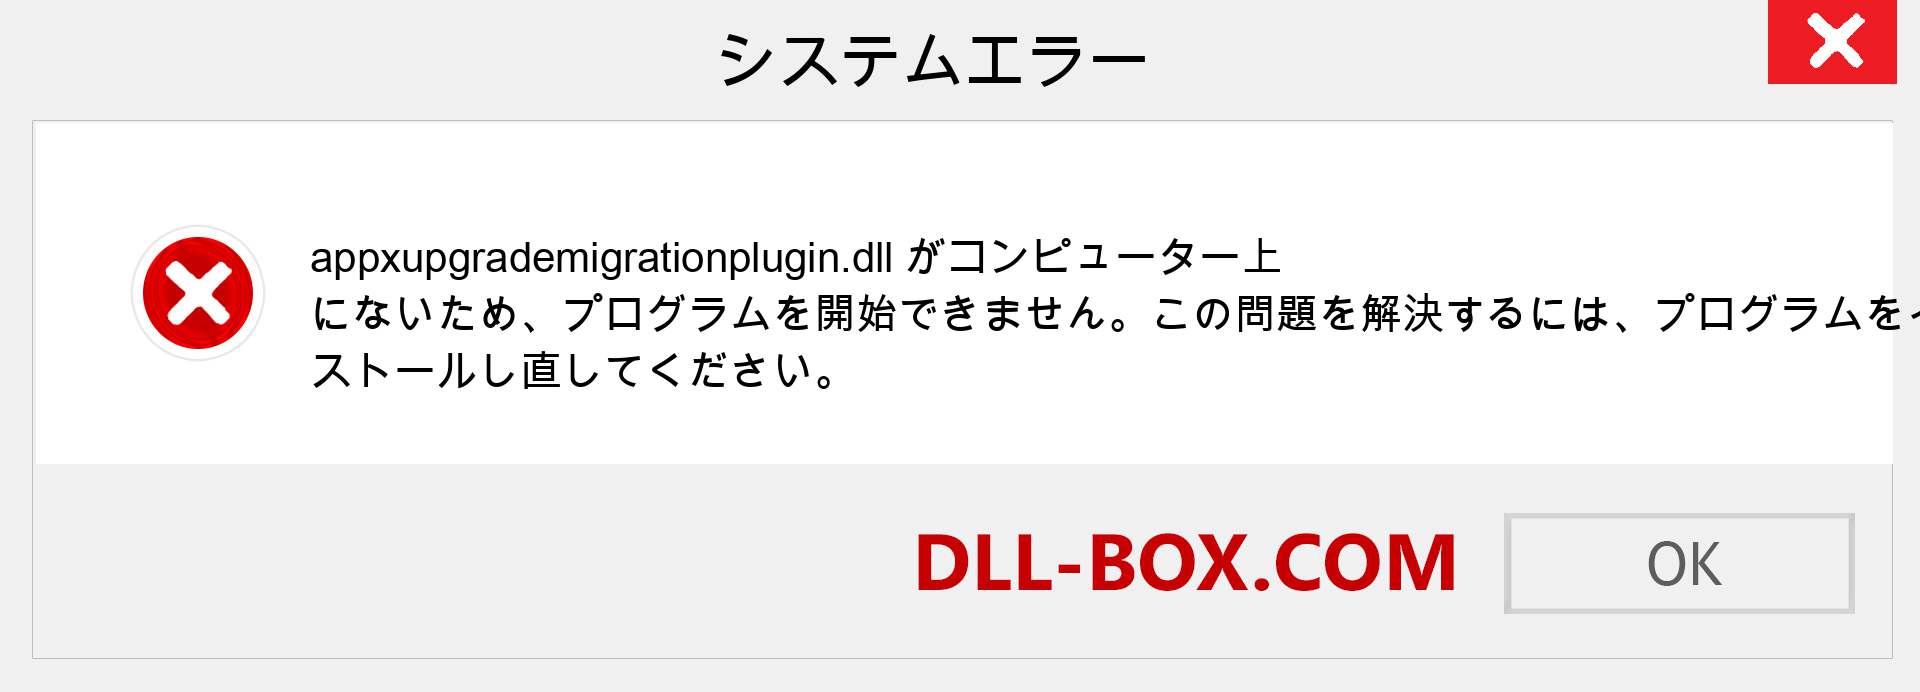 appxupgrademigrationplugin.dllファイルがありませんか？ Windows 7、8、10用にダウンロード-Windows、写真、画像でappxupgrademigrationplugindllの欠落エラーを修正